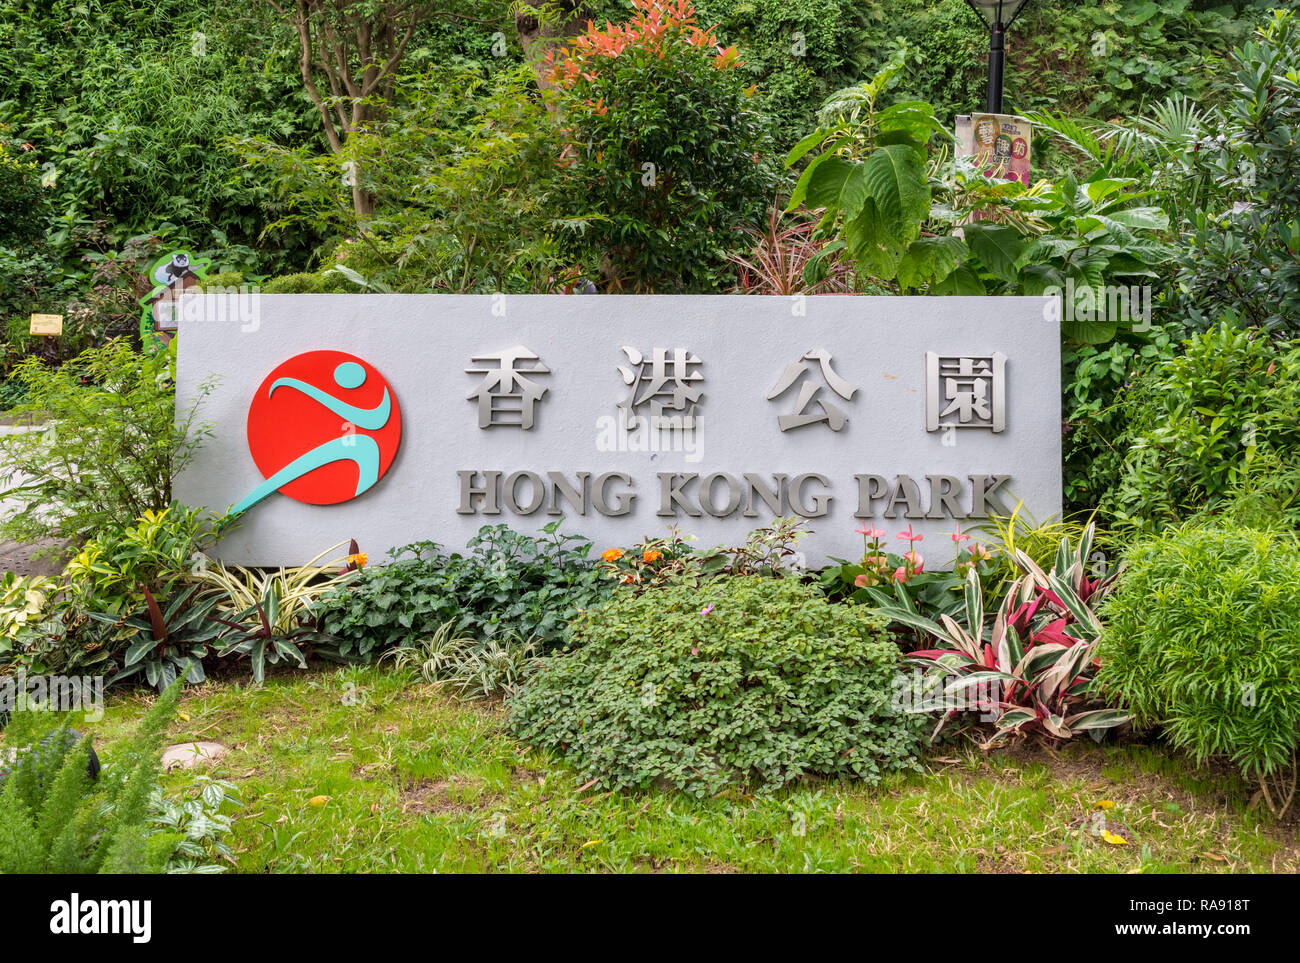 Hong Kong Park entrance sign, Central, Hong Kong Stock Photo